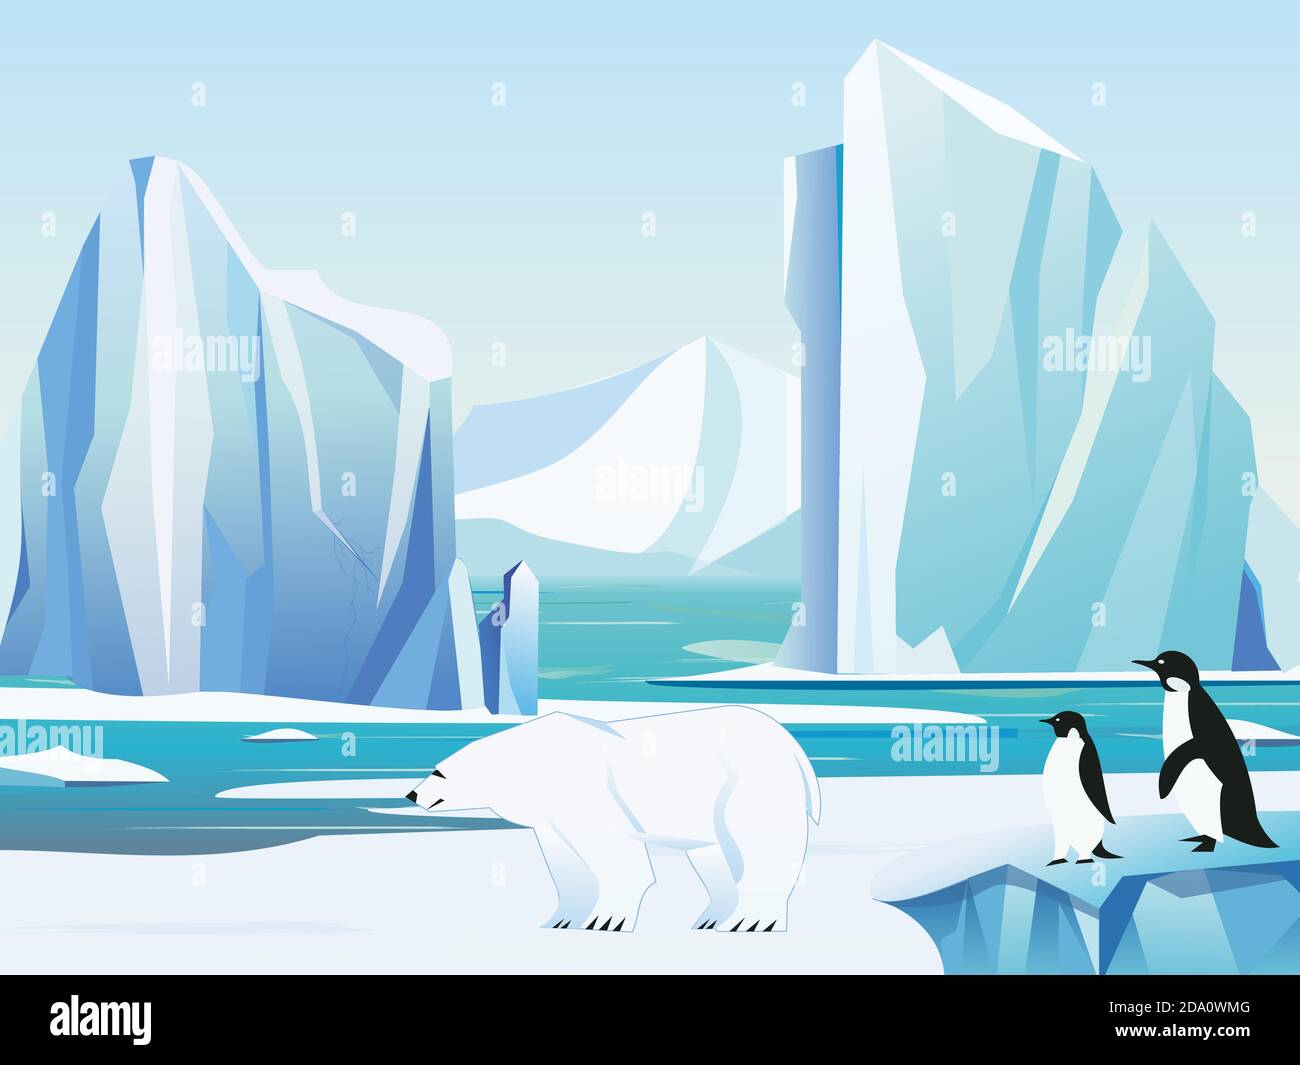 Illustration vectorielle paysage arctique avec ours polaire et pingouins, iceberg et montagnes. Climat froid hiver arrière-plan. Illustration de Vecteur